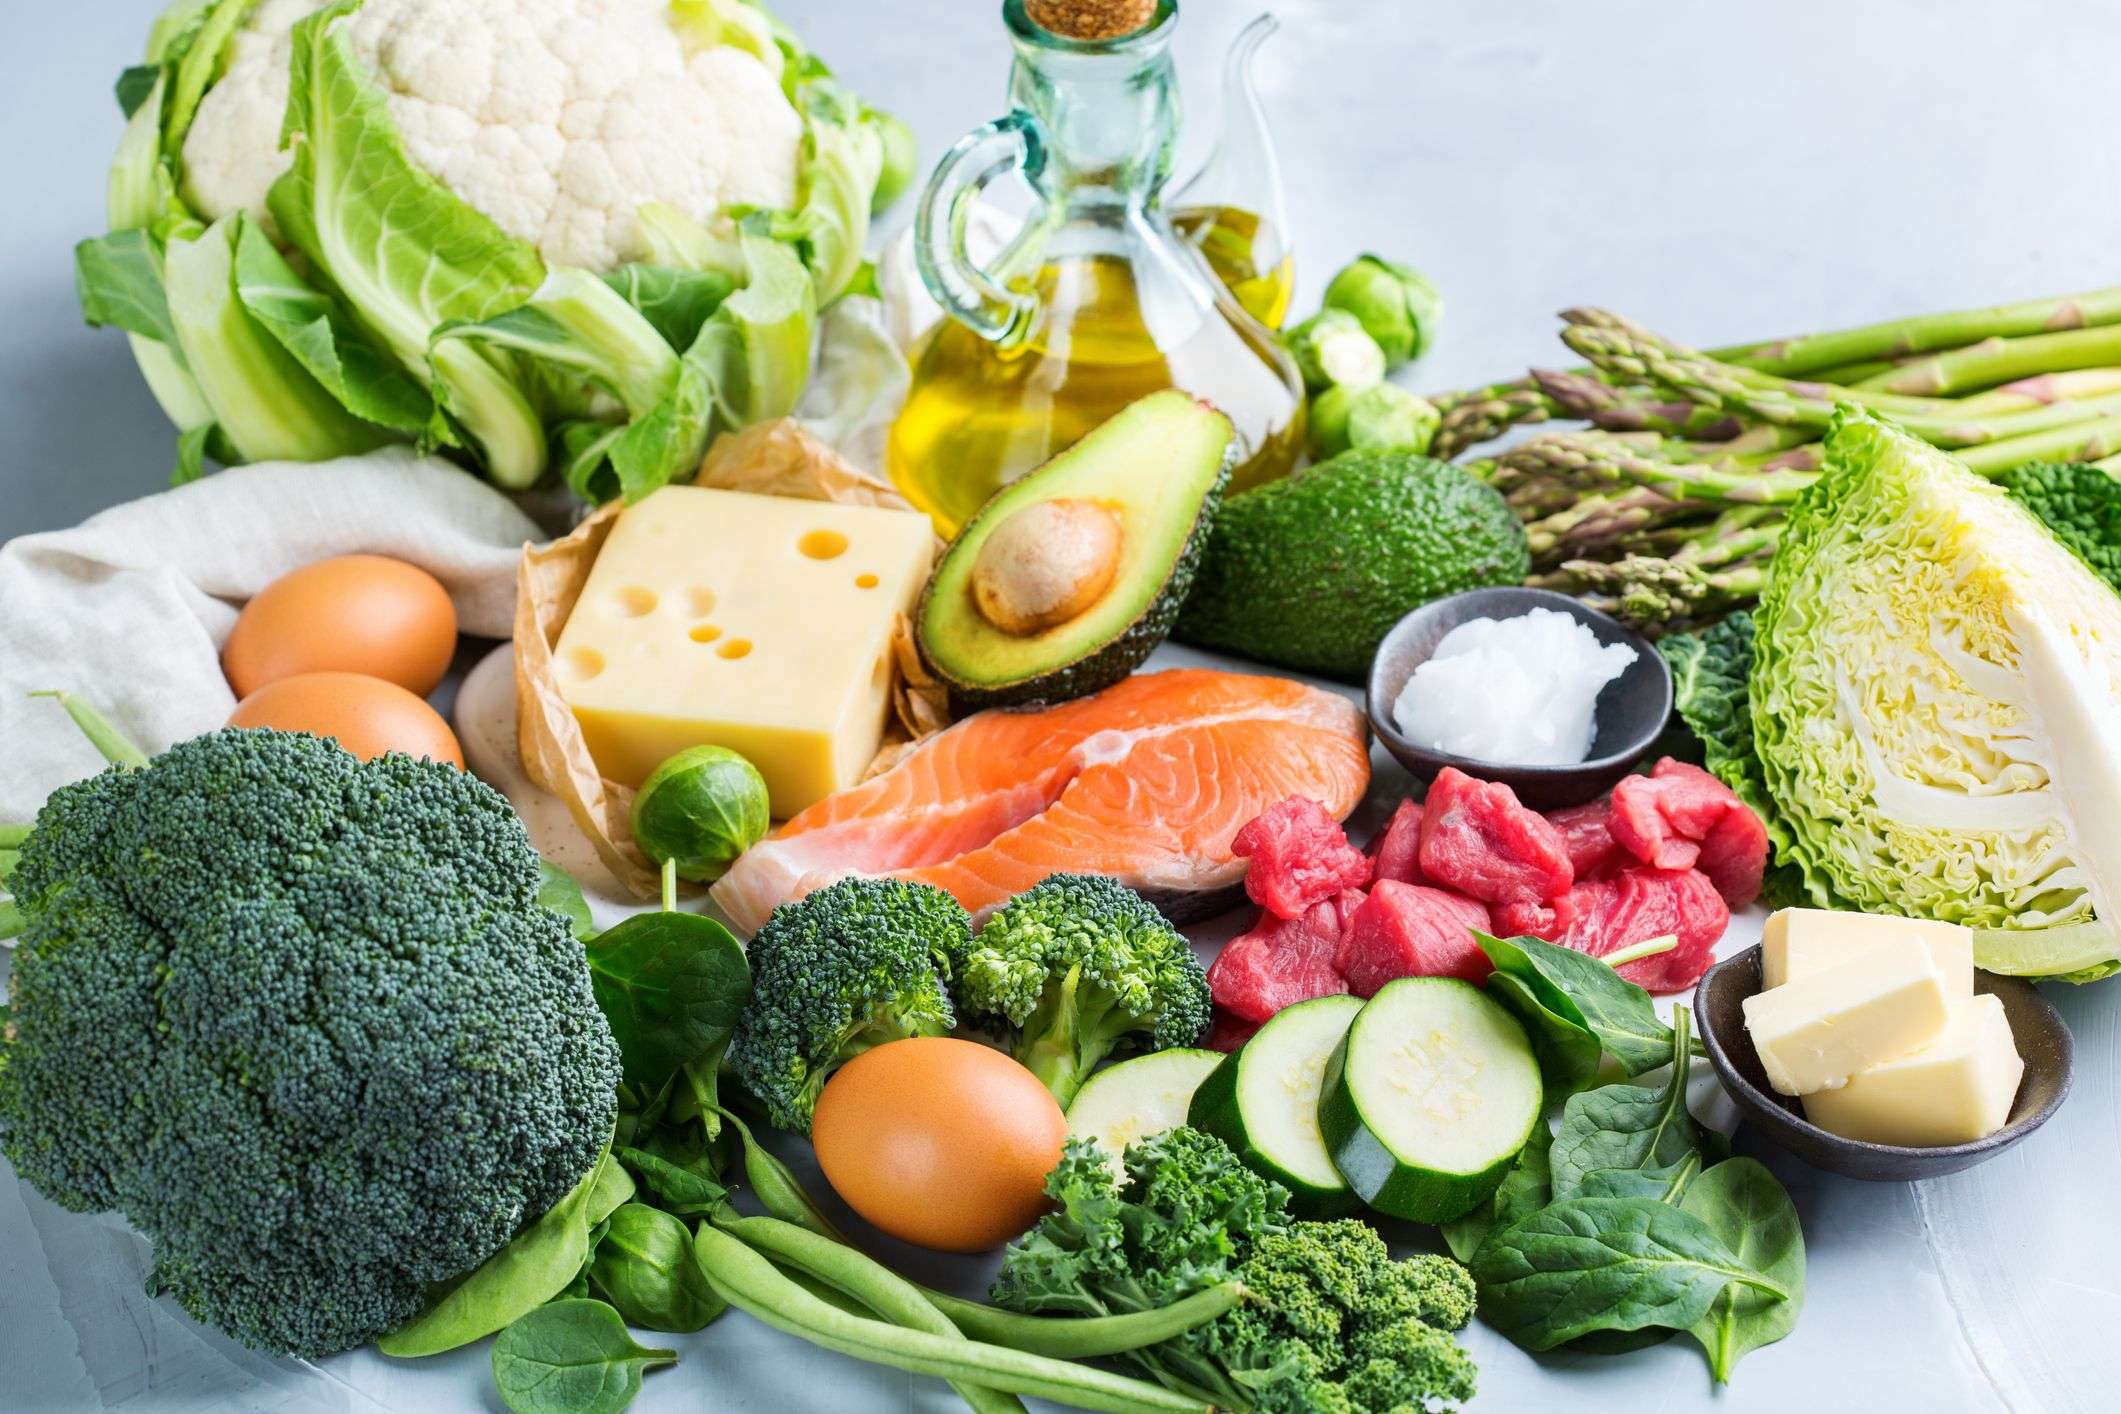 Vegetables For Weight Loss: सर्दियों में वजन को करना चाहते हैं कम तो इन सब्जियों को कर सकते हैं डाइट में शामिल